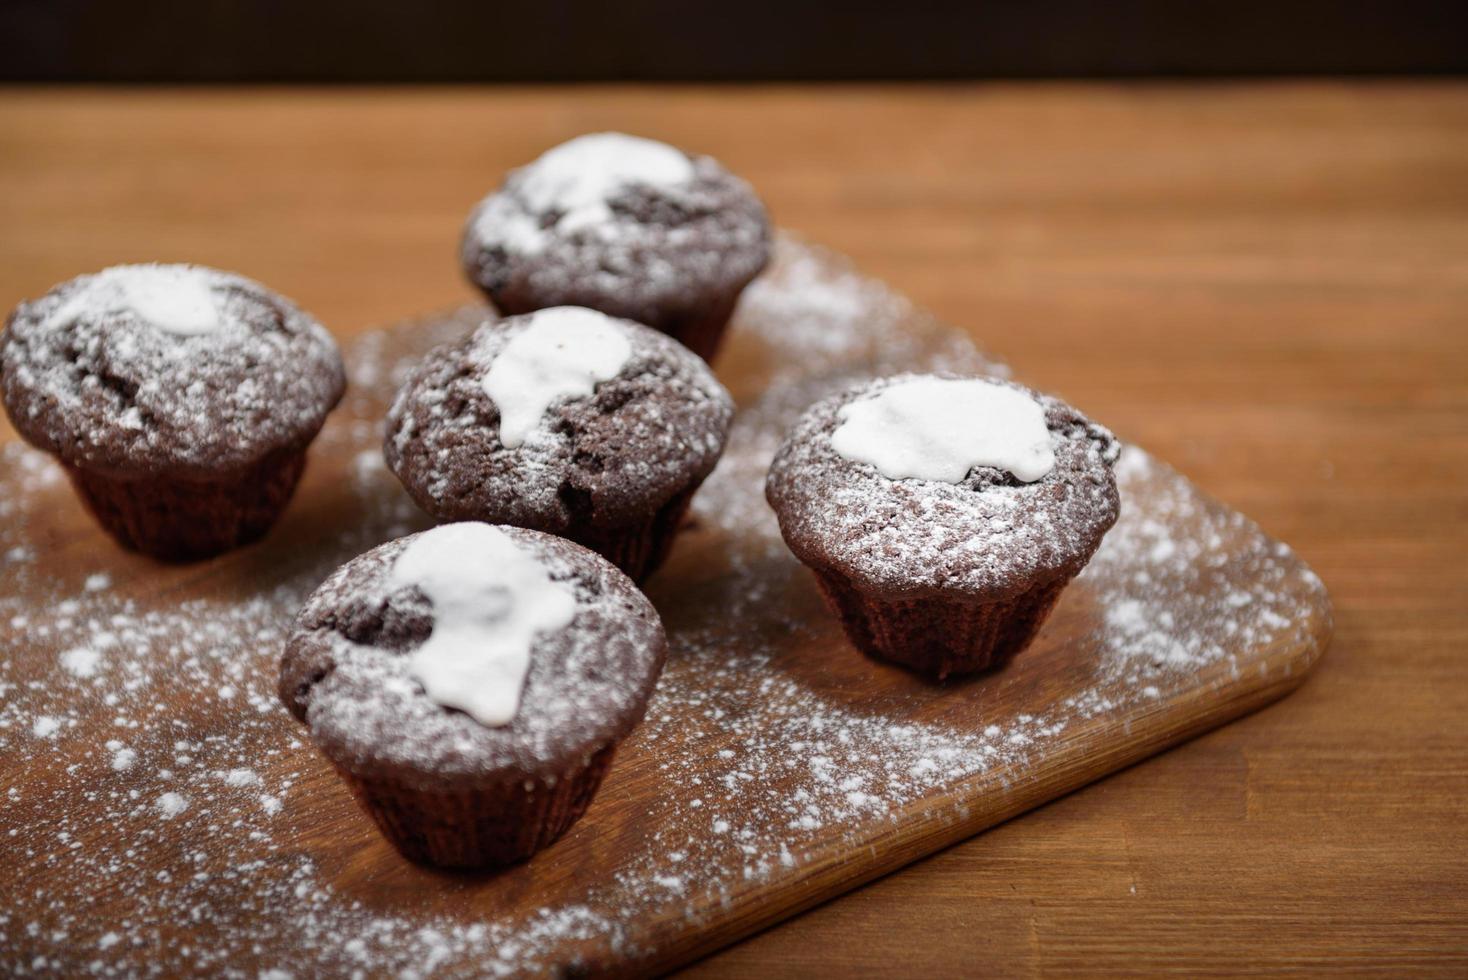 muffins au chocolat sur la planche de bois photo